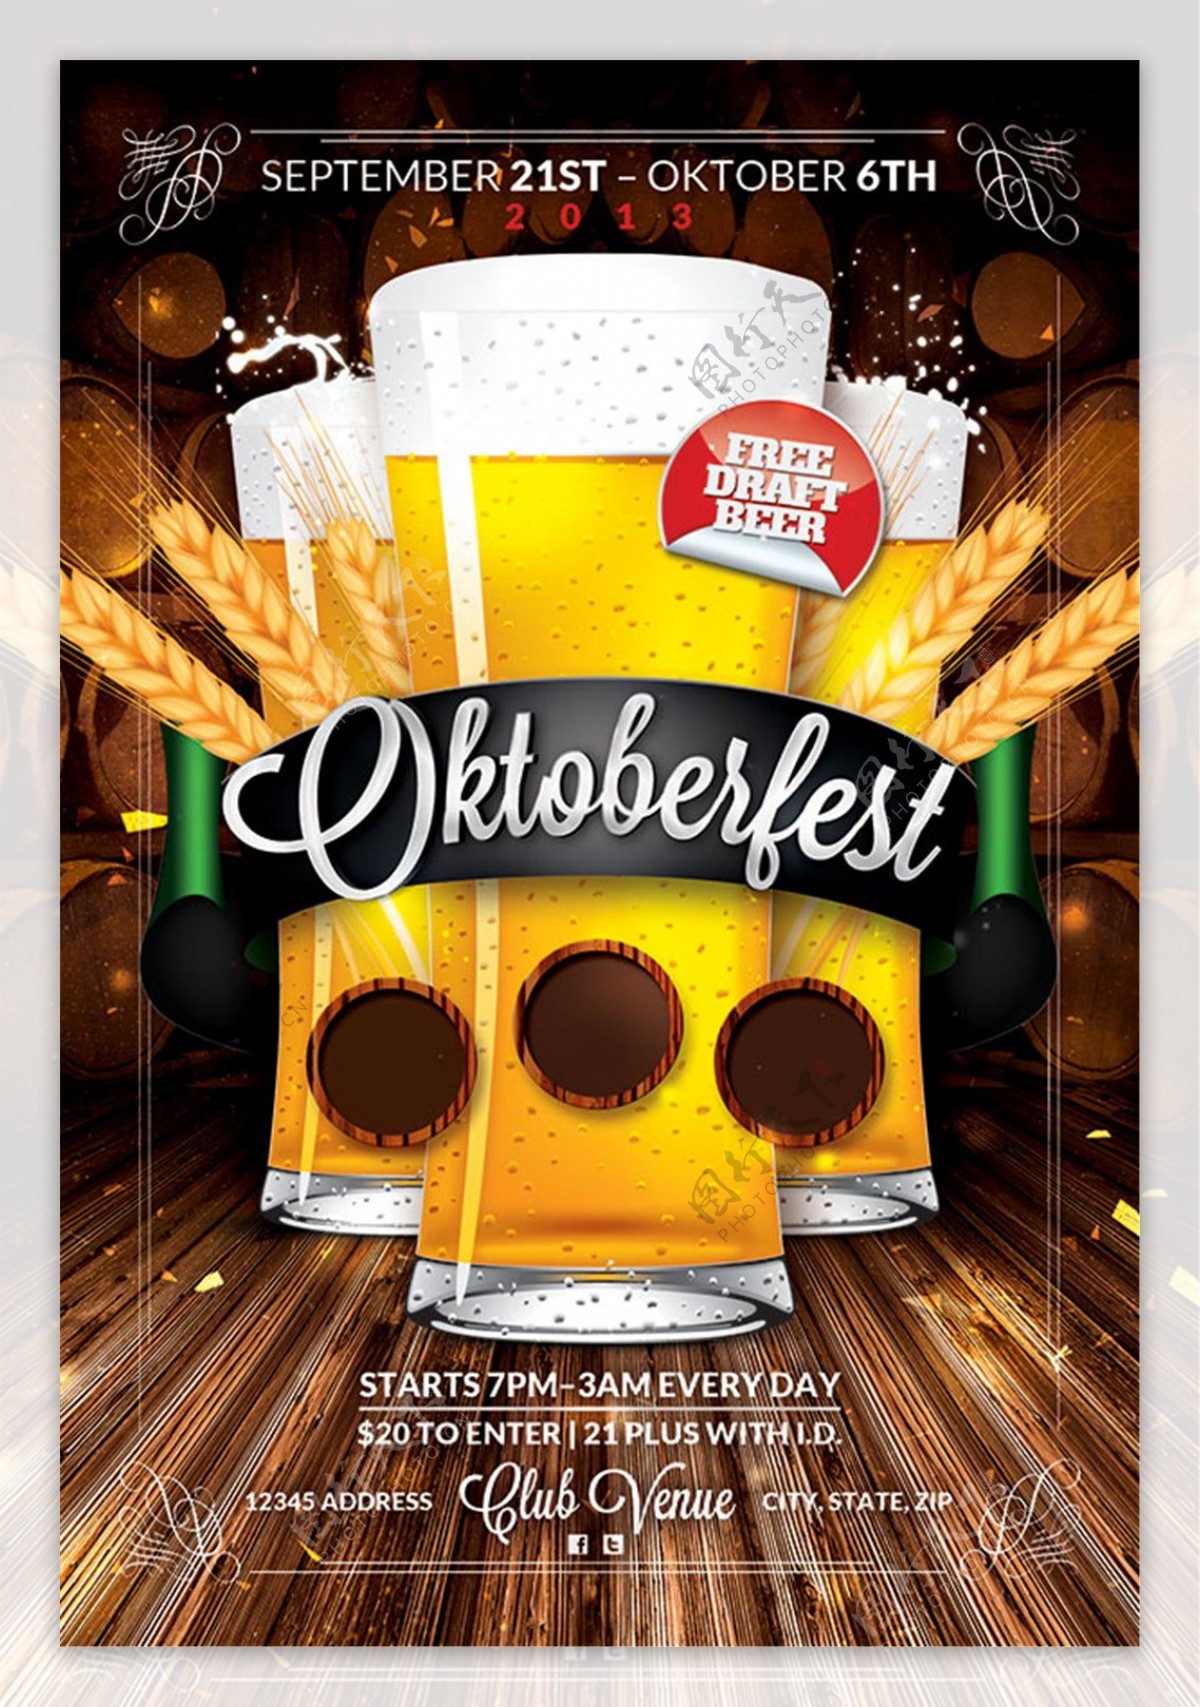 啤酒节活动平面广告PSD免费模板